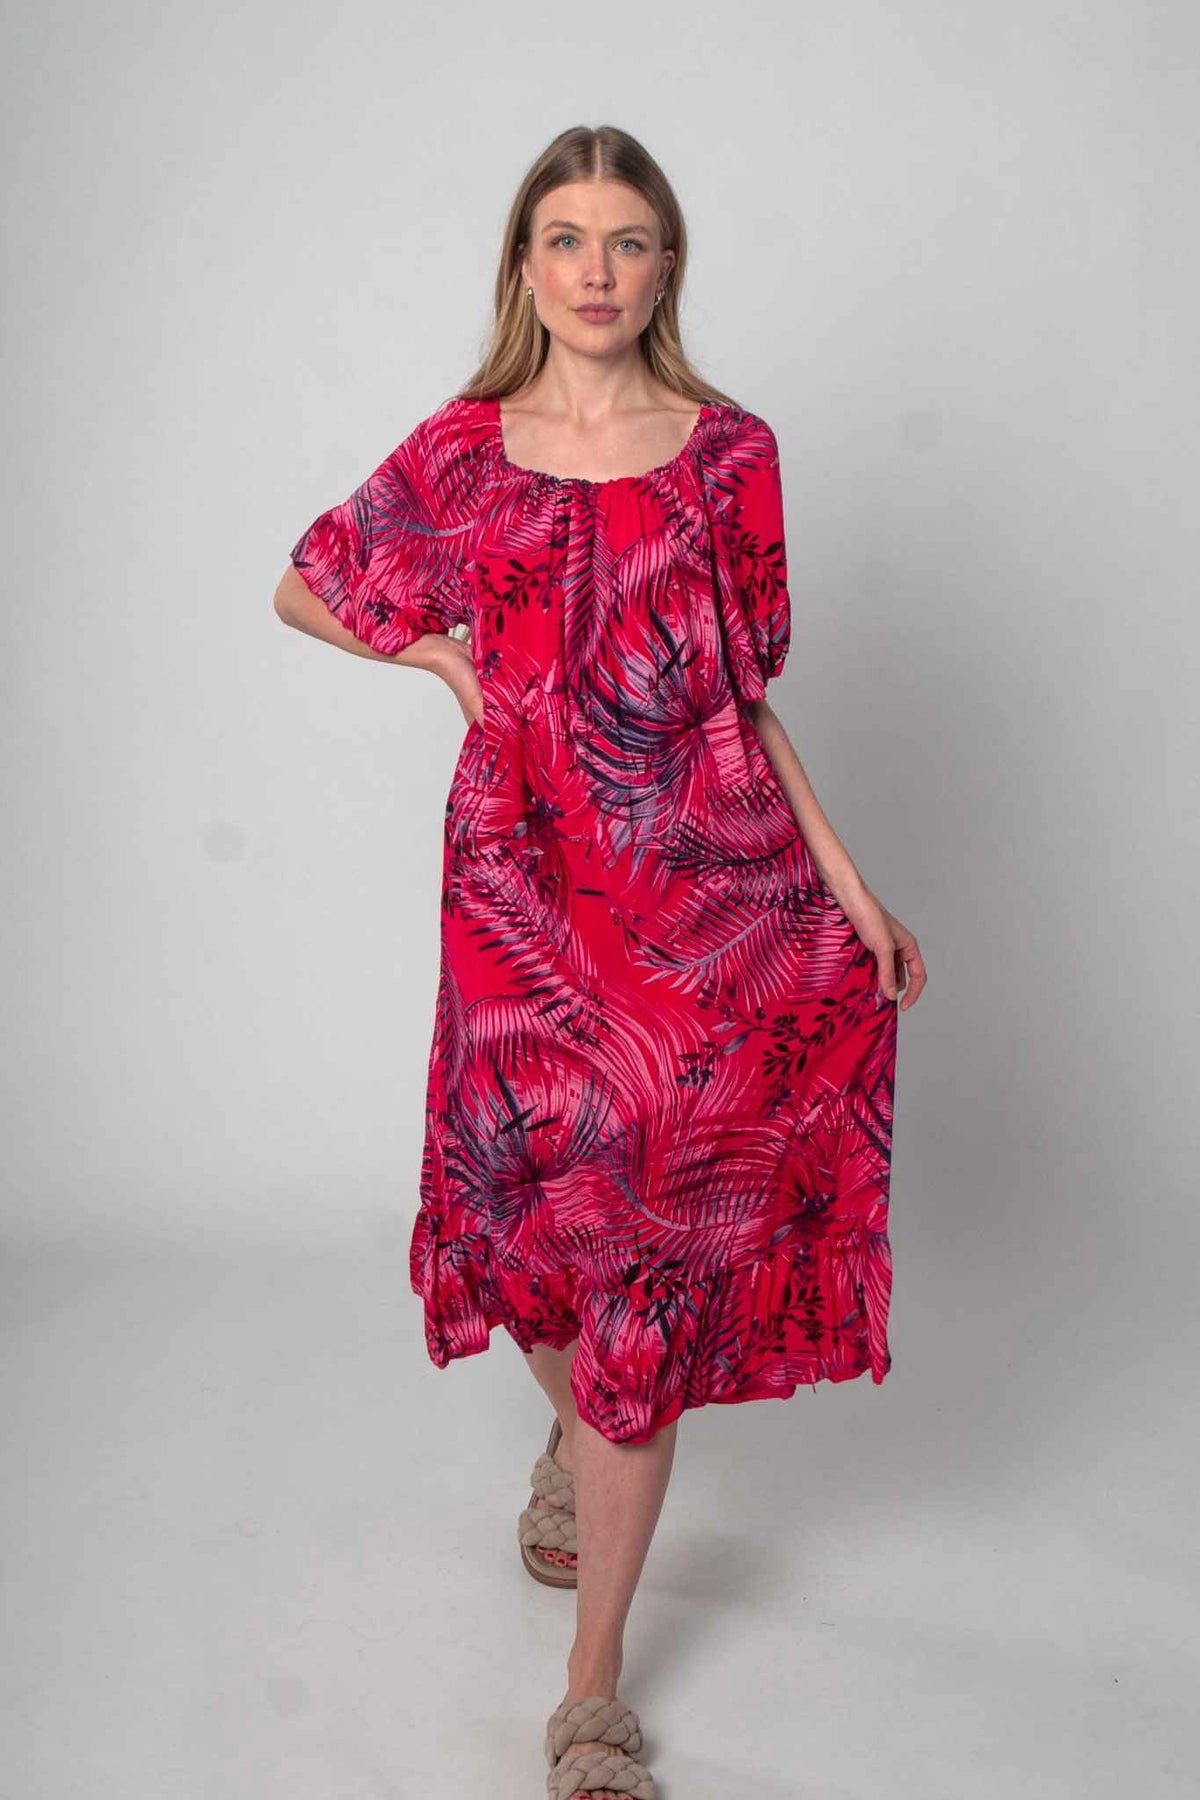 Lockeres Baumwolle Kleid mit Design - Rot